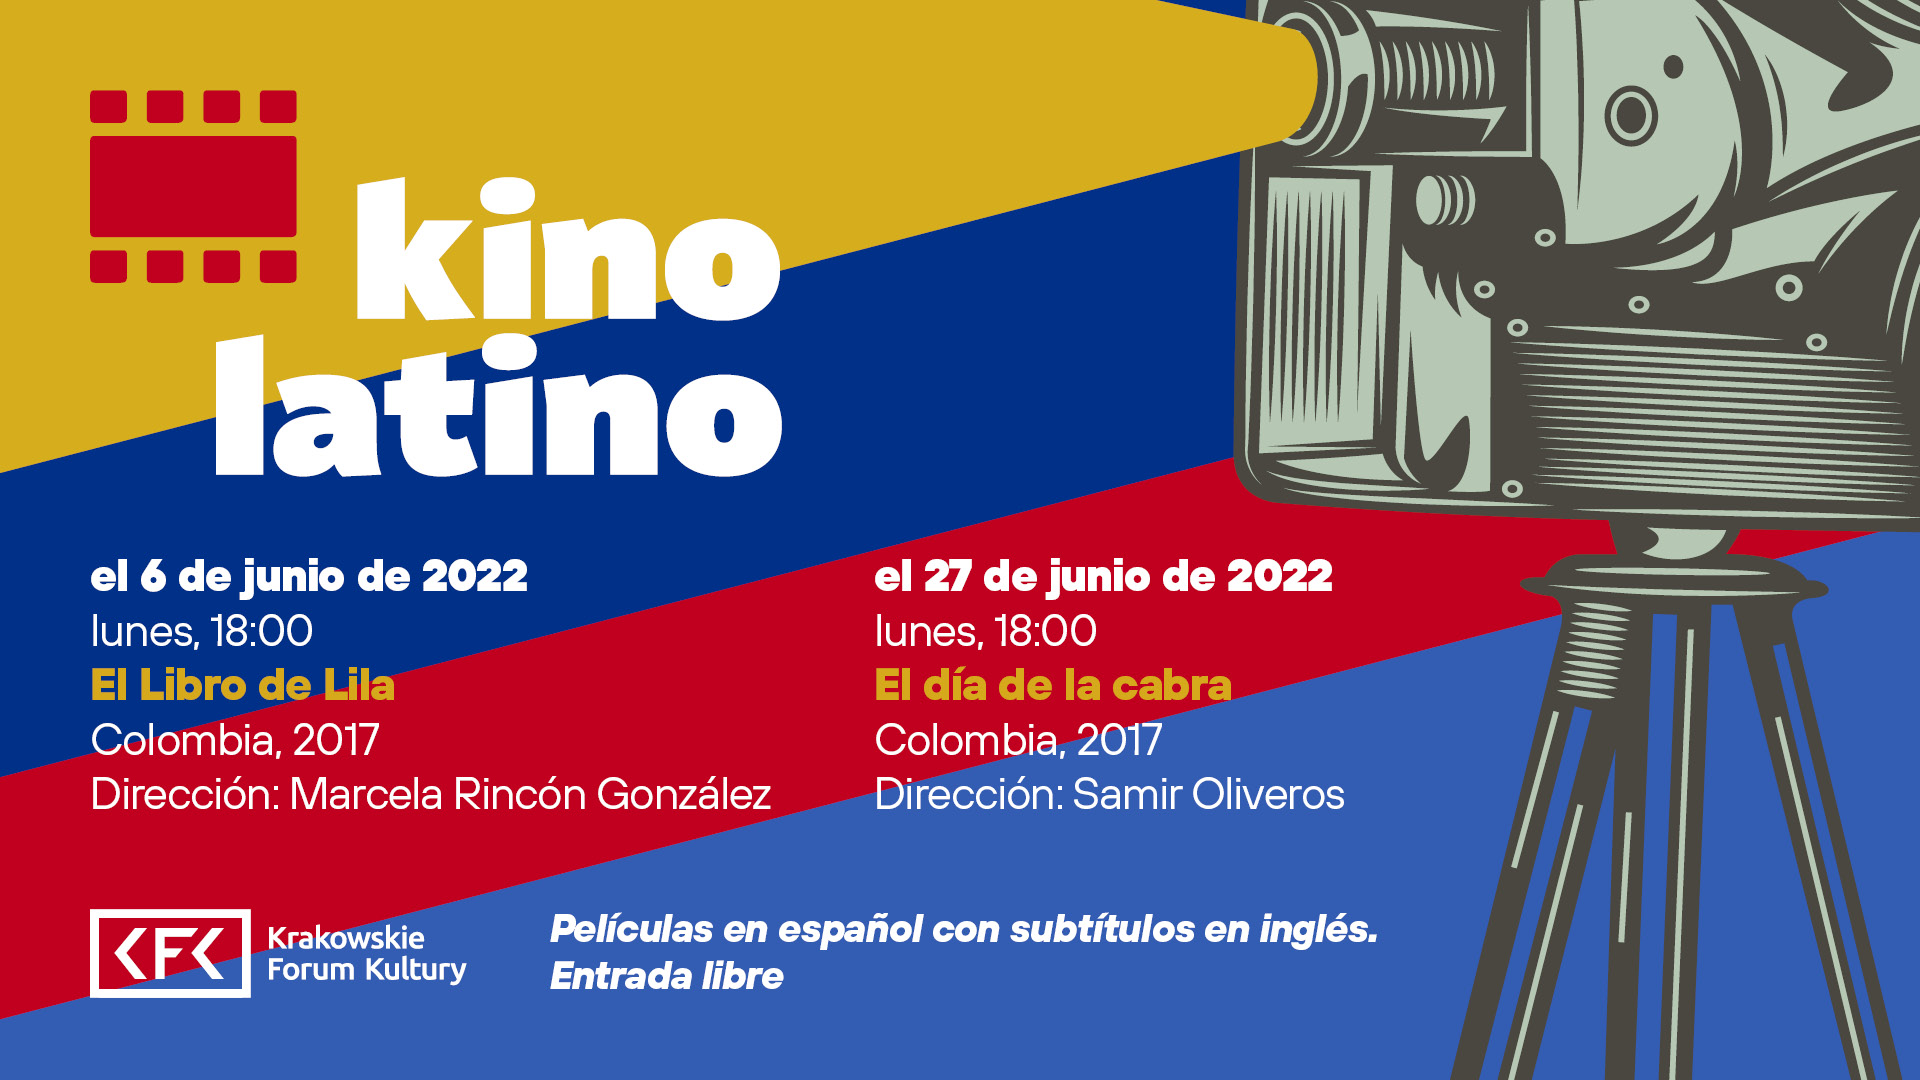 kfk2022 kino latino wm 6 6 1 - Kino Latino: El día de la cabra